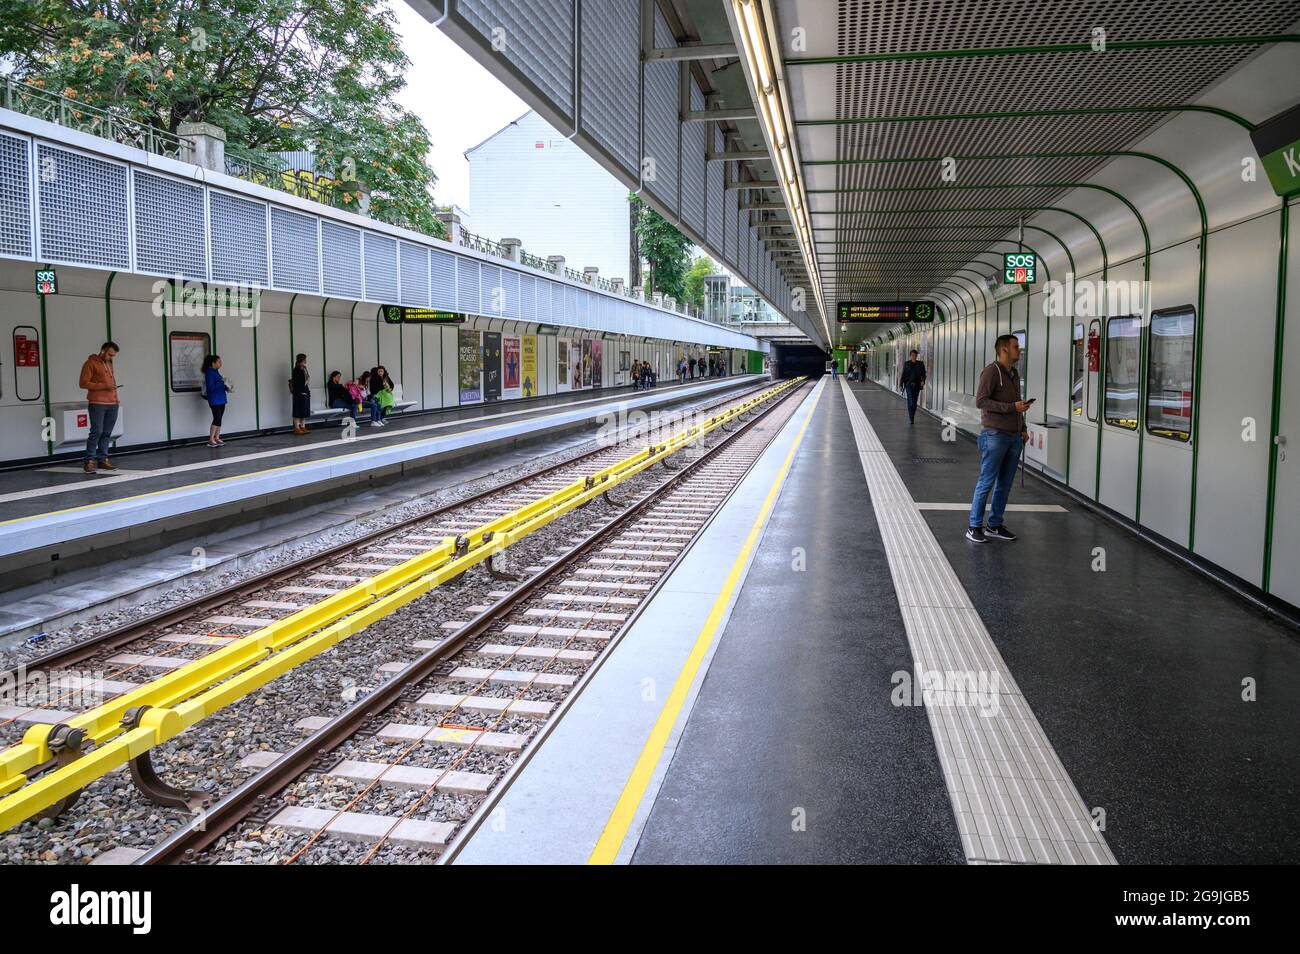 wien Österreich - 26. September 2019. Am Bahnhof Kettenbruckengasse, Wien, warten Leute auf den Zug. Stockfoto